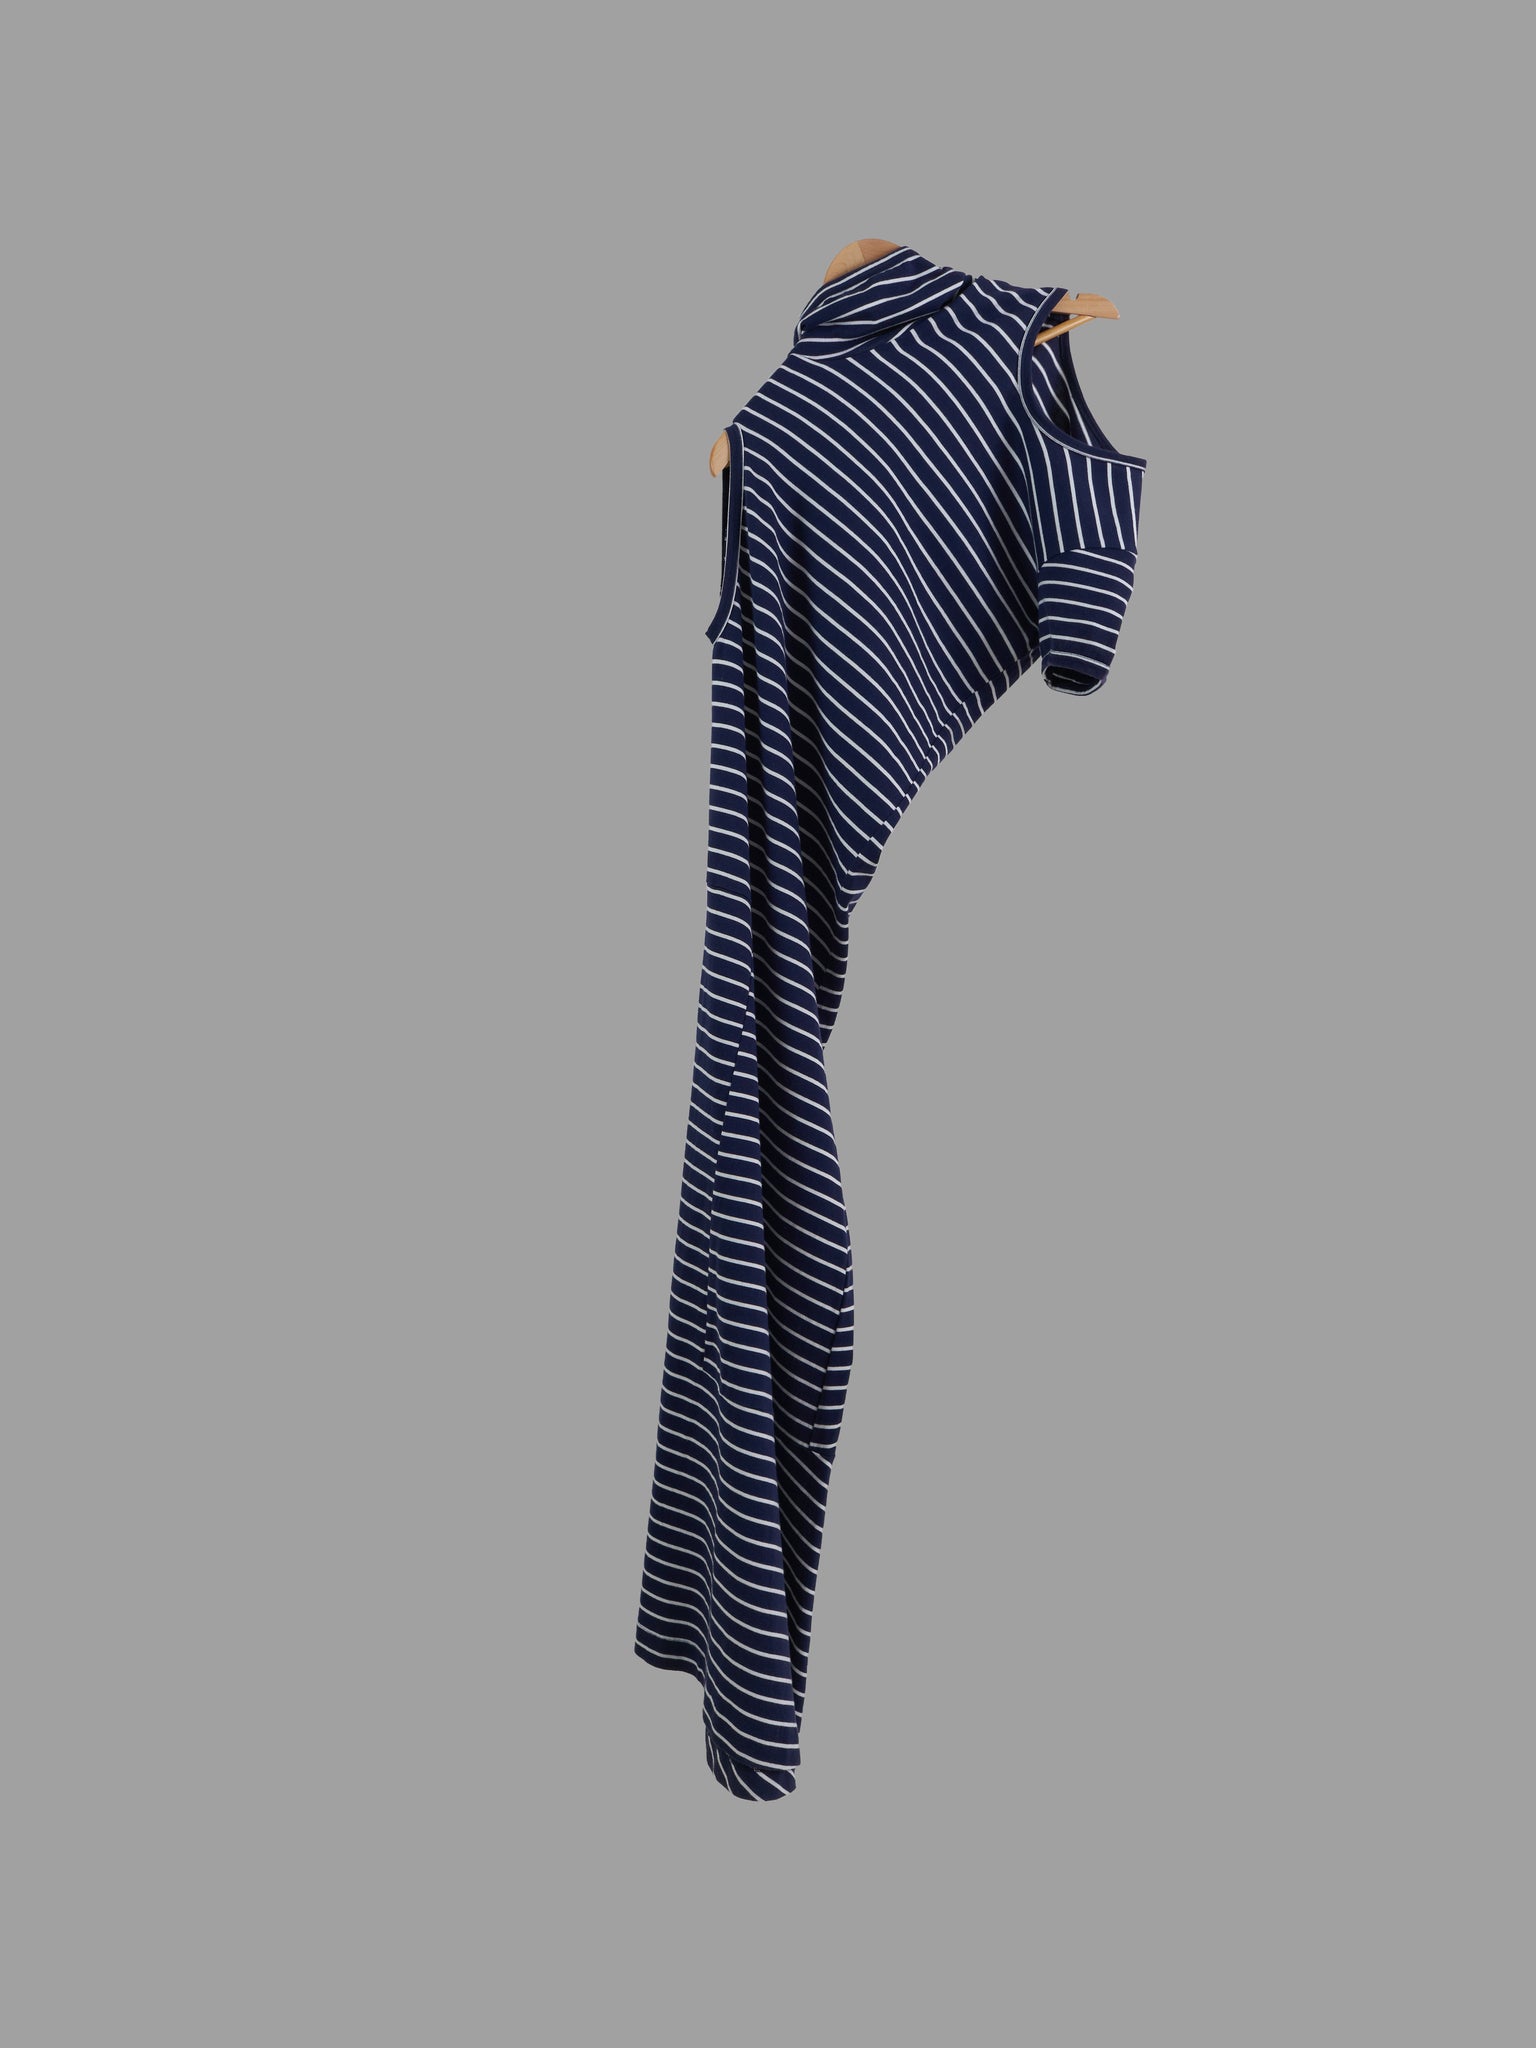 Comme des Garcons 2001 navy striped cotton jersey triple armhole maxi dress